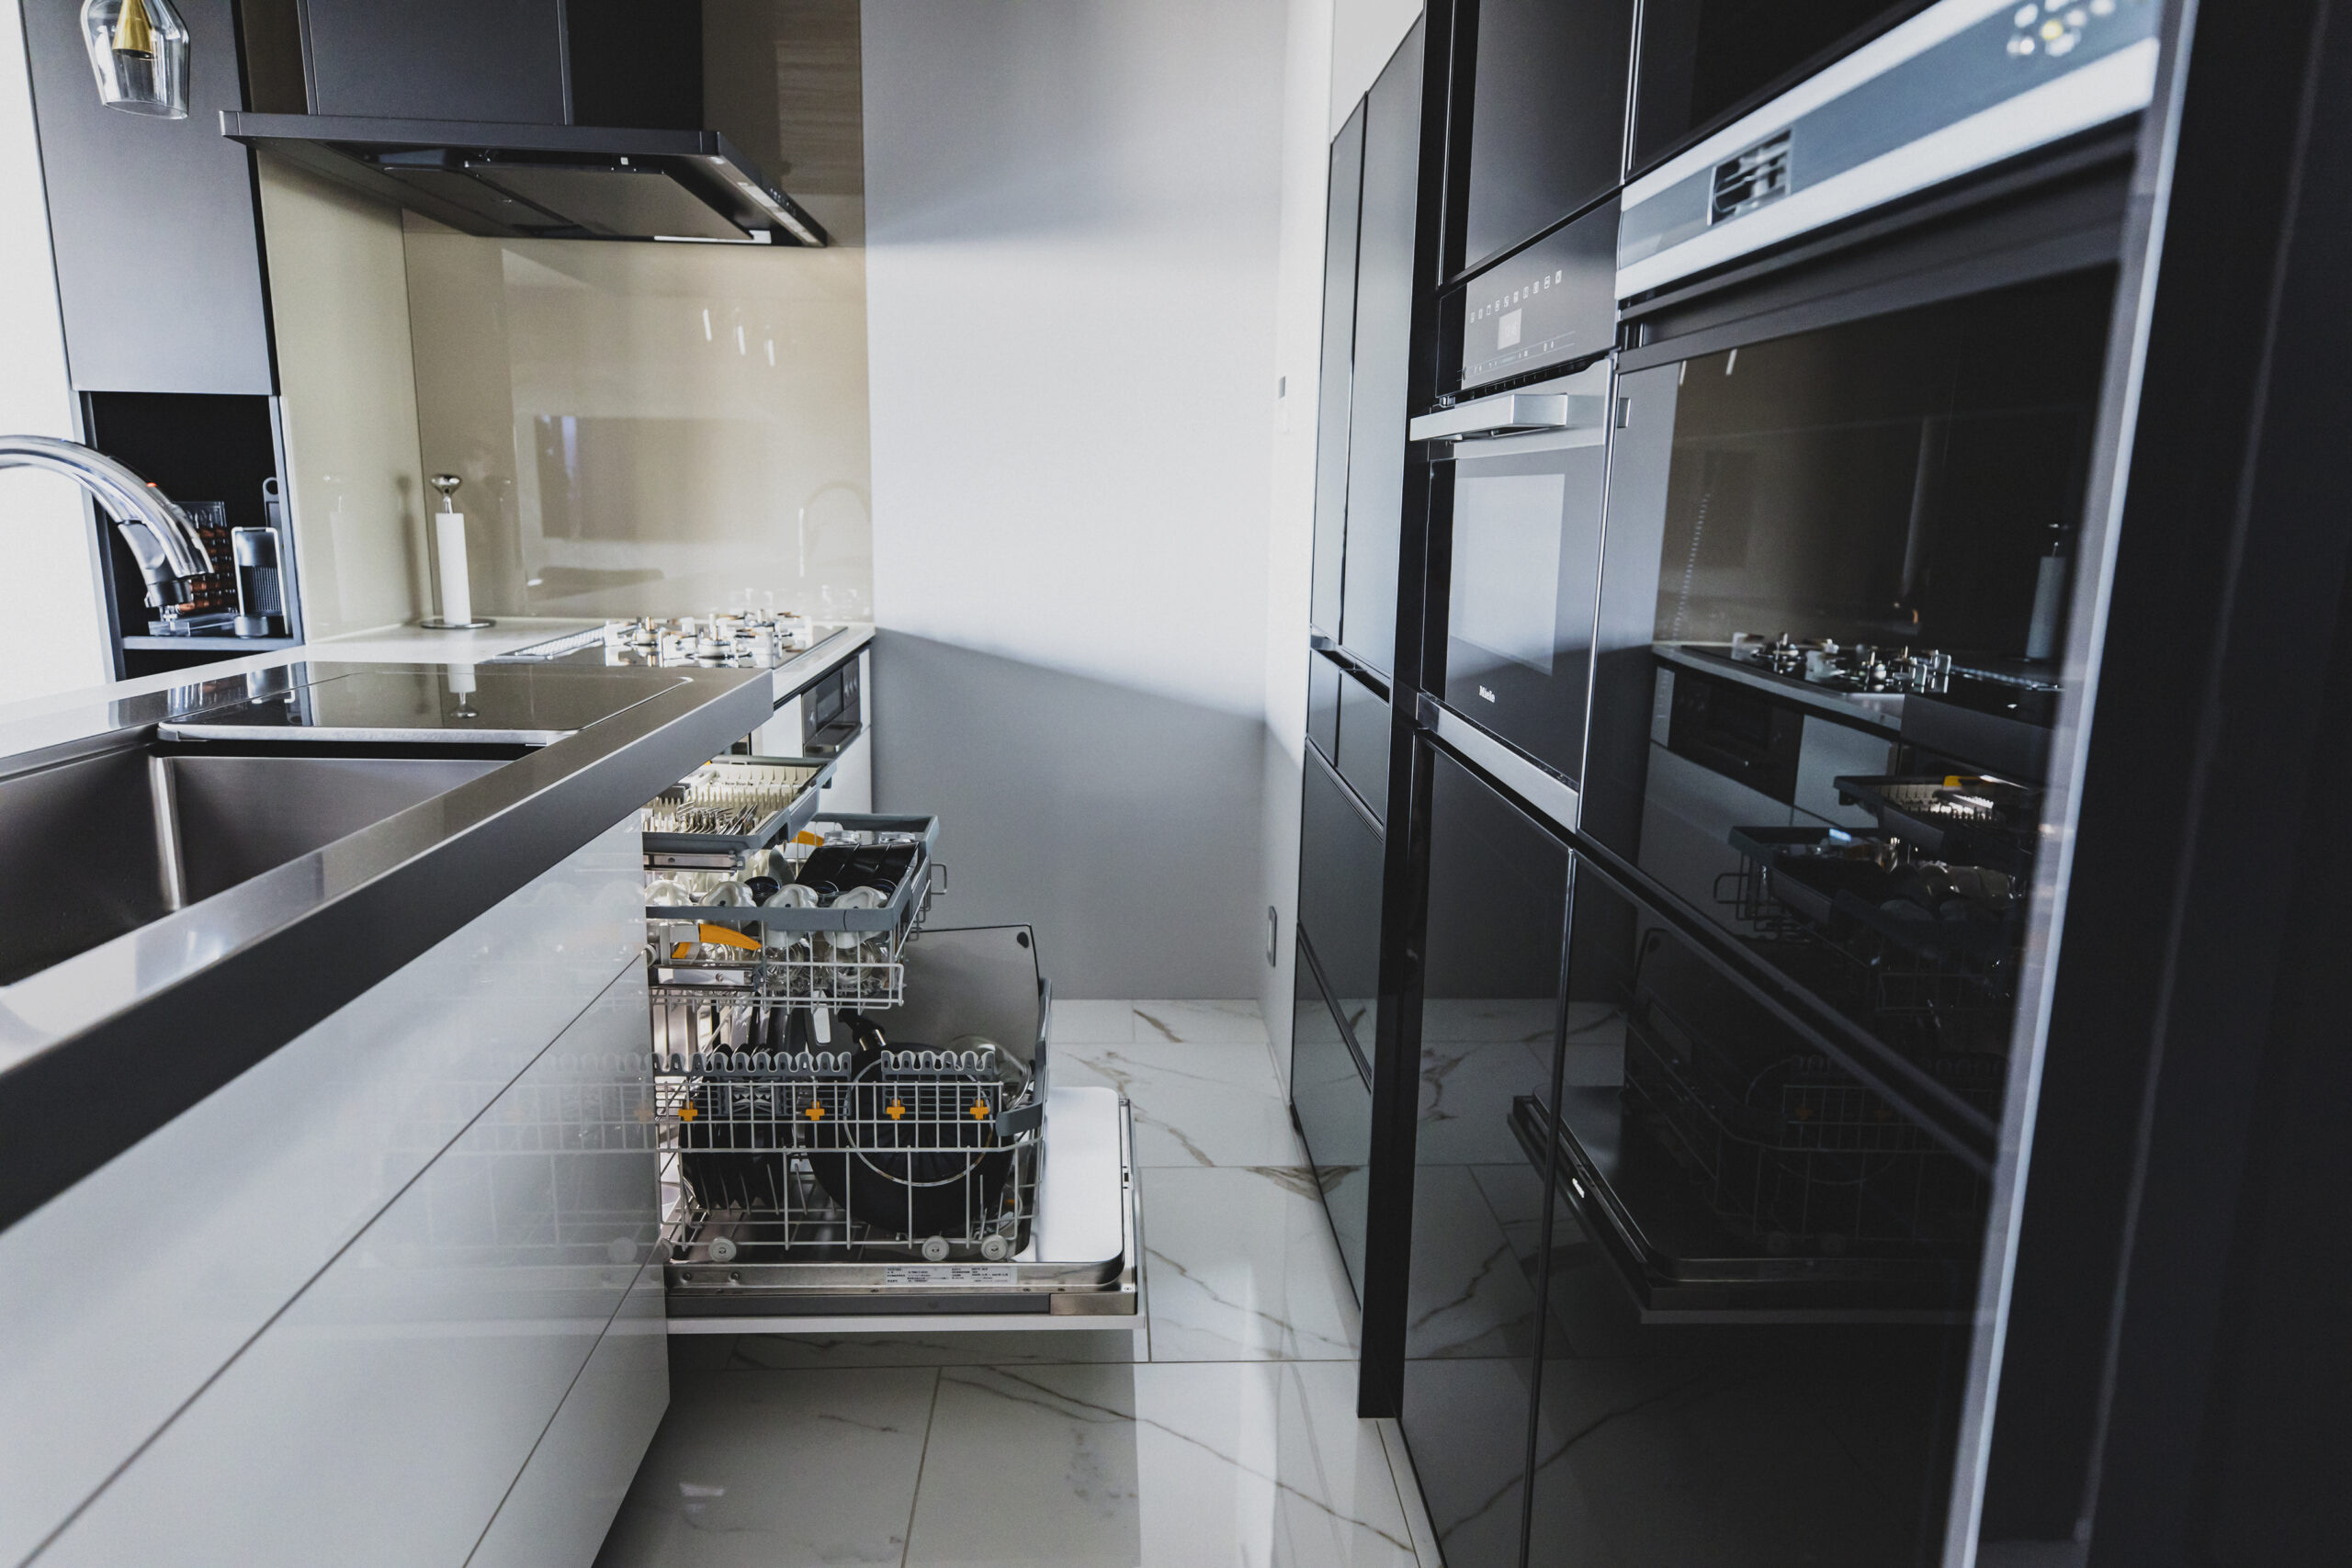 クリナップのシステムキッチン「セントロ」にMieleビルトイン食器洗い機とオーブンを